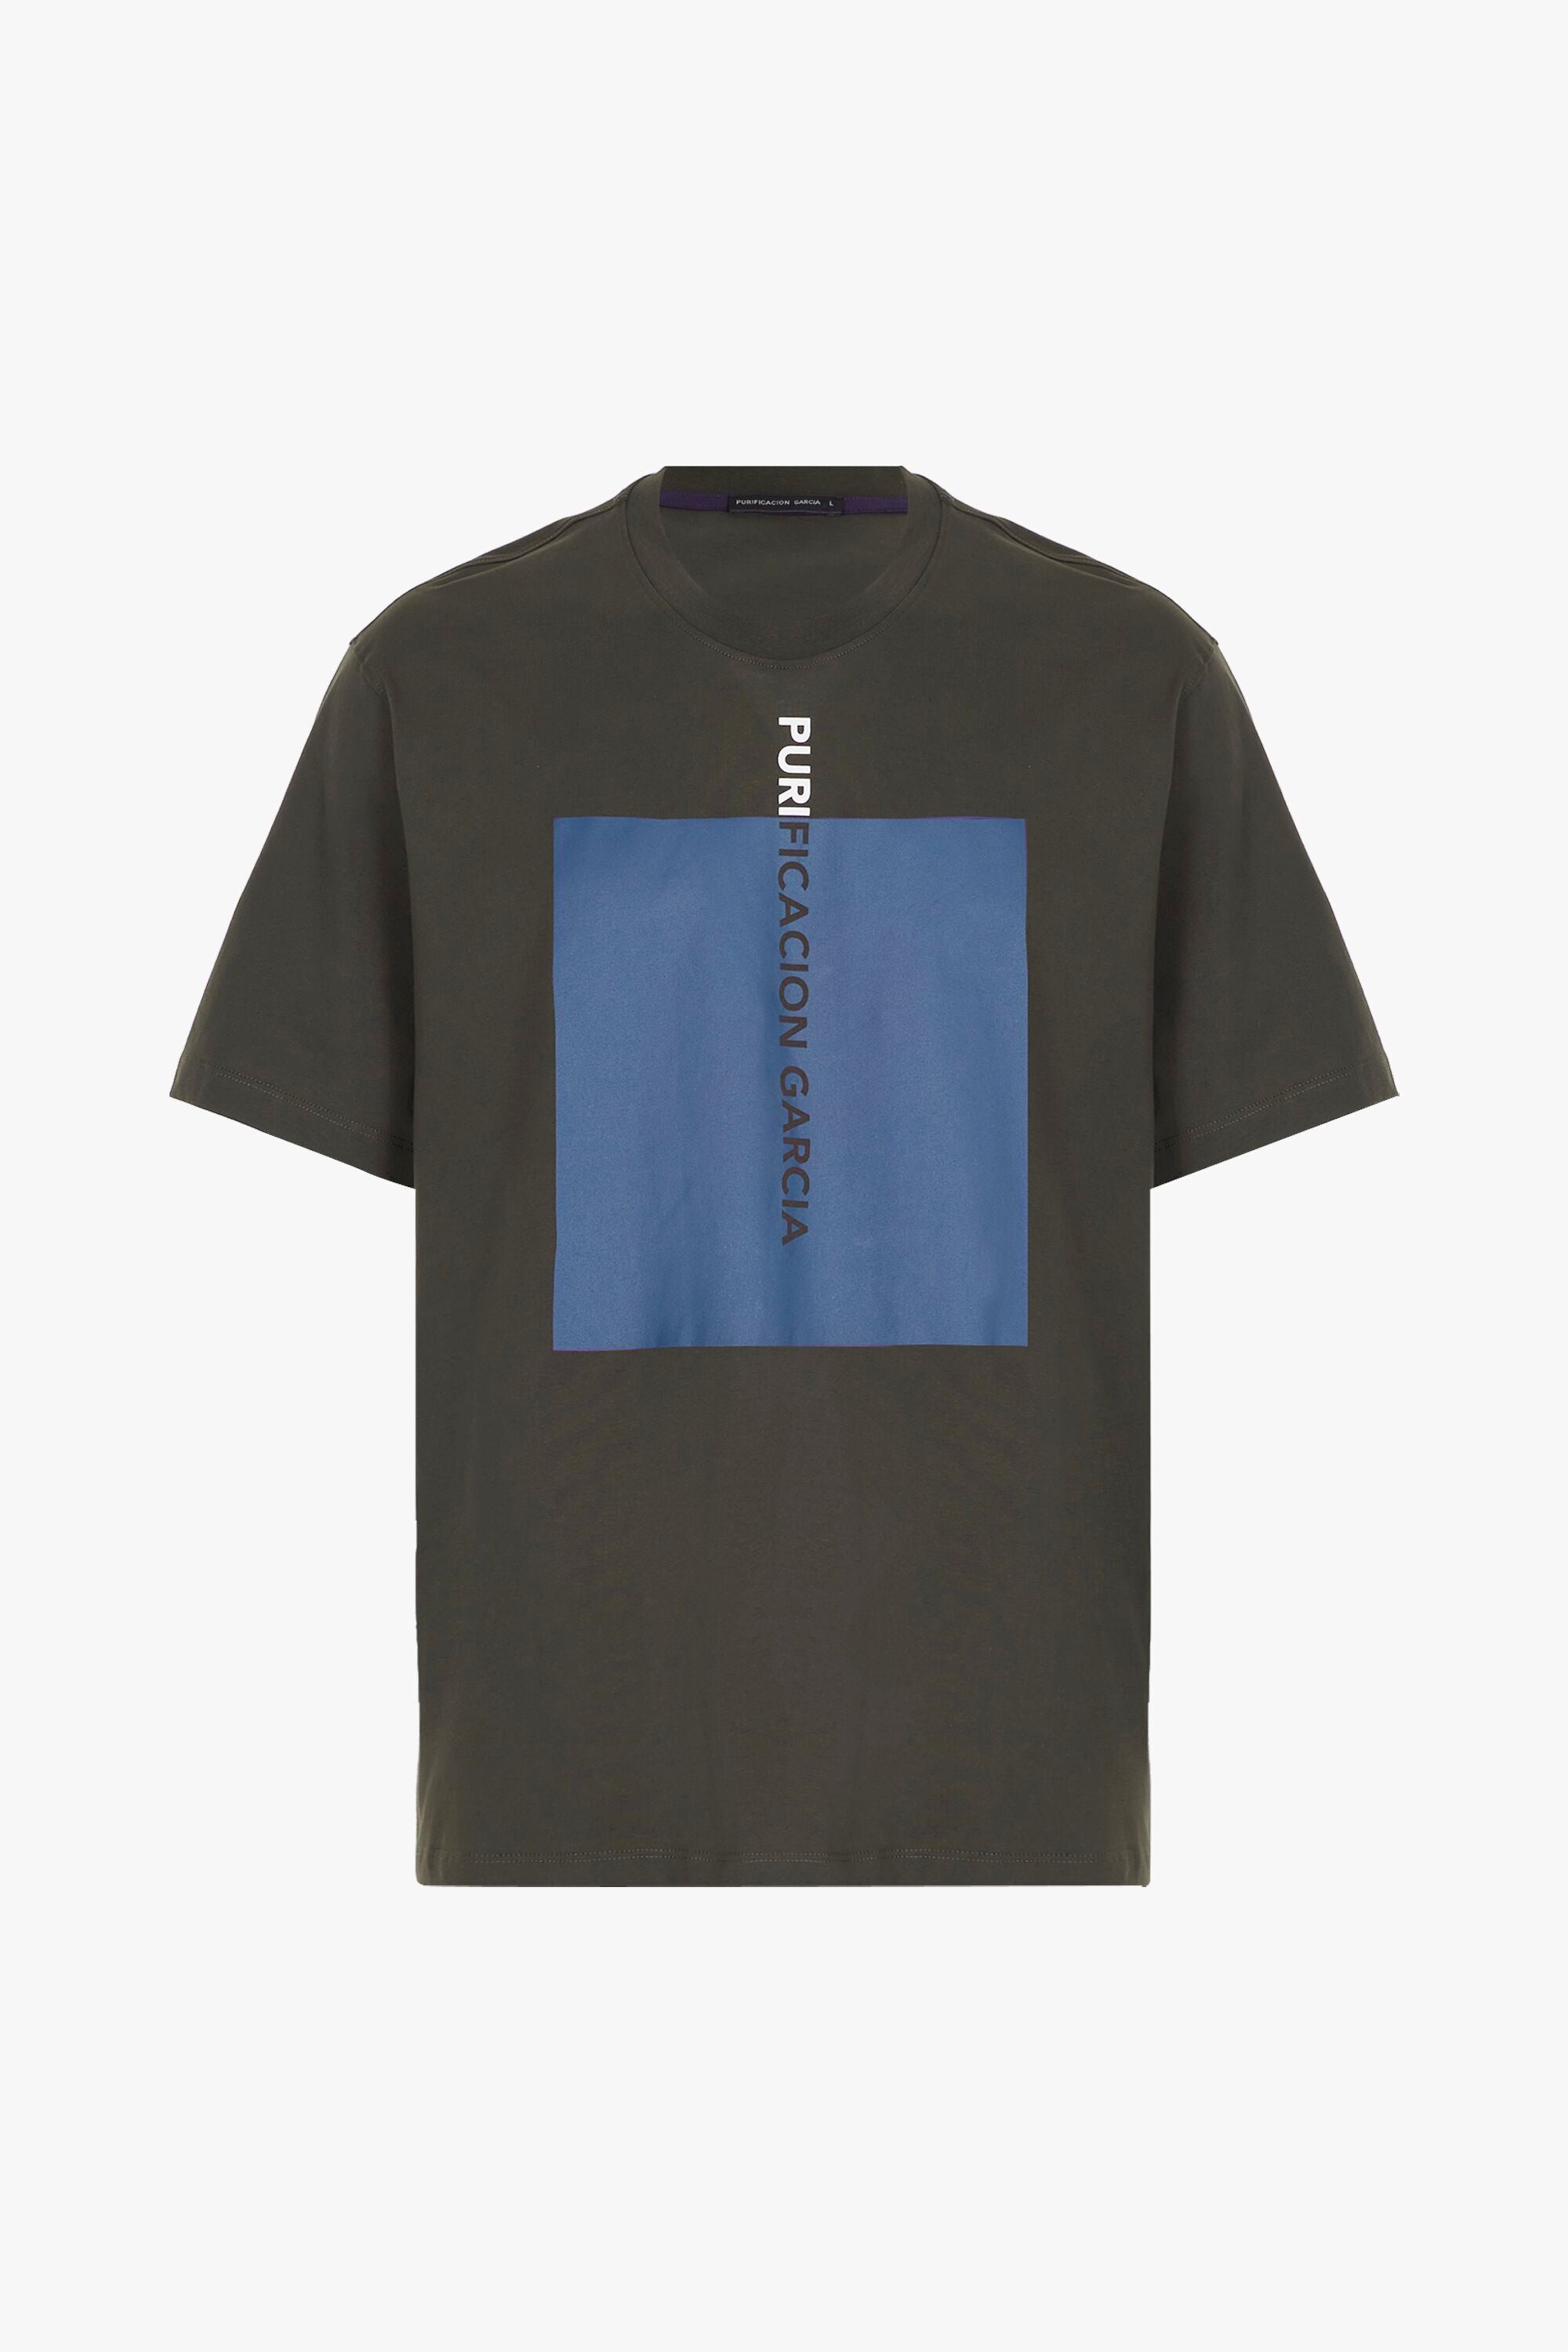 Cube printed t-shirt brown - Purificacion Garcia Denmark